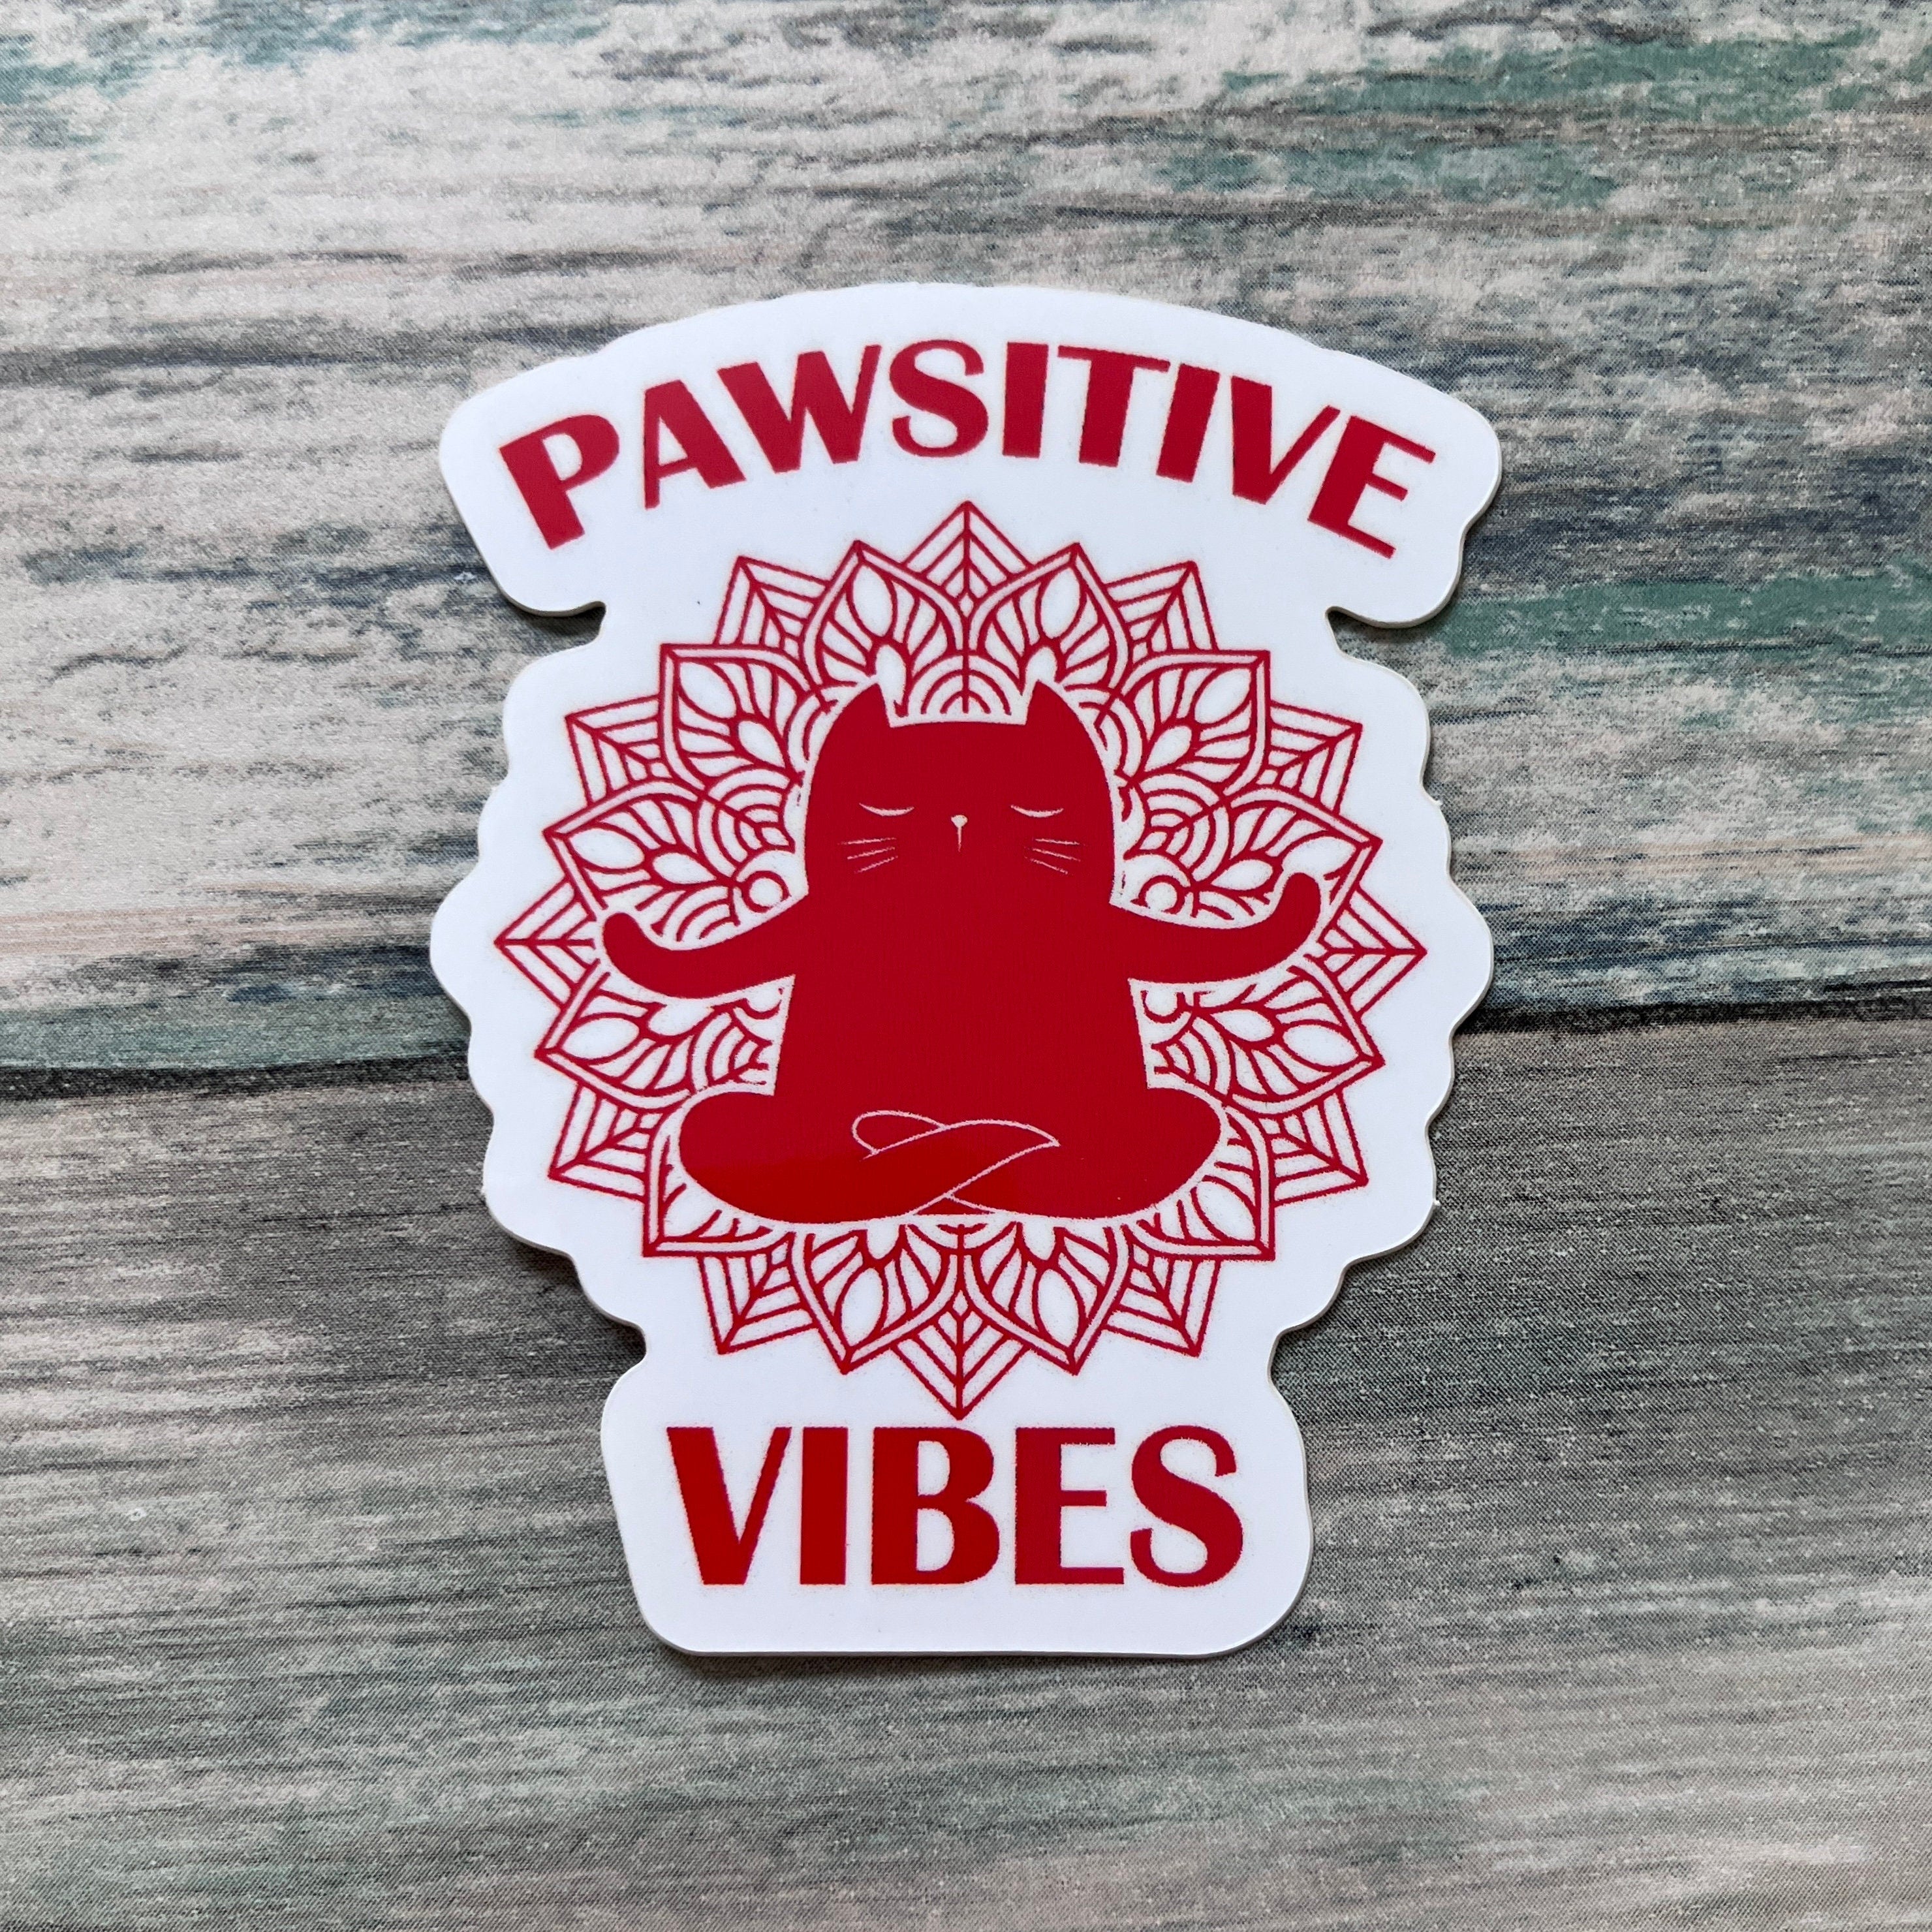 Pawsitive Vibes Sticker - Vinyl Sticker - Vinyl Cat Sticker - Spiritual Sticker